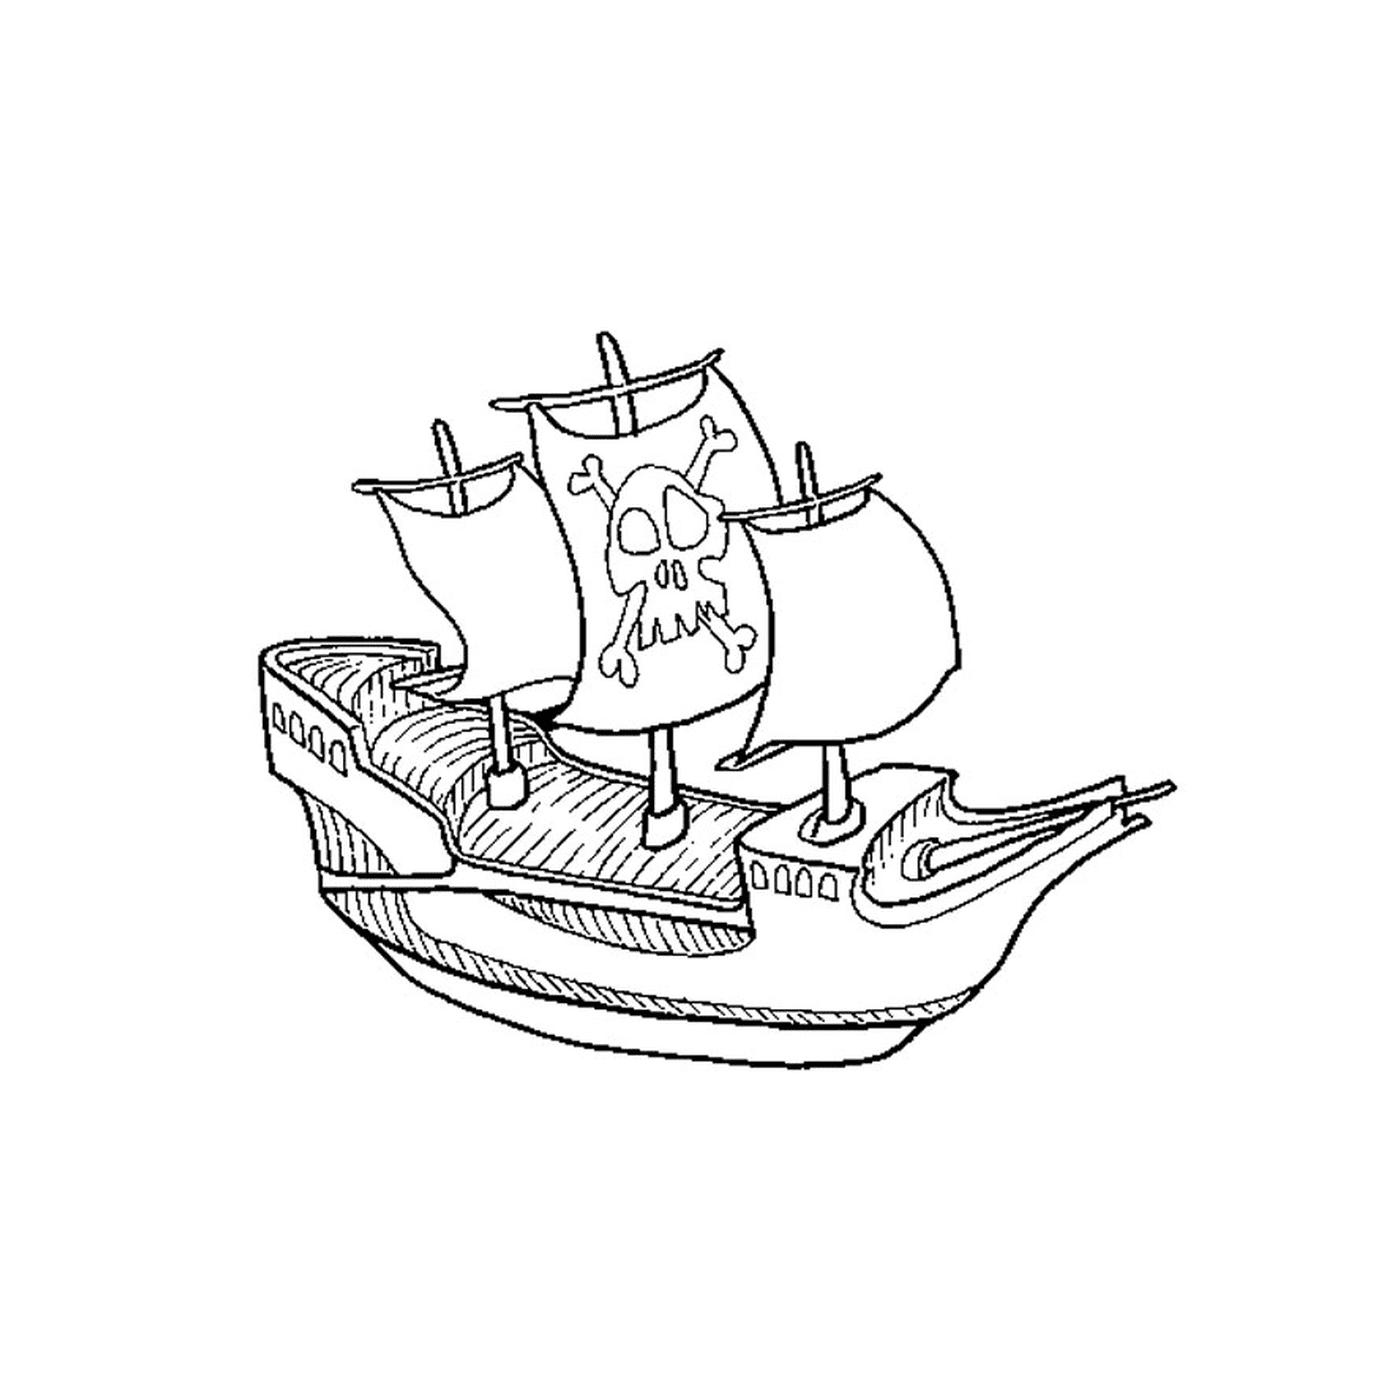  Пиратская лодка с головой смерти 